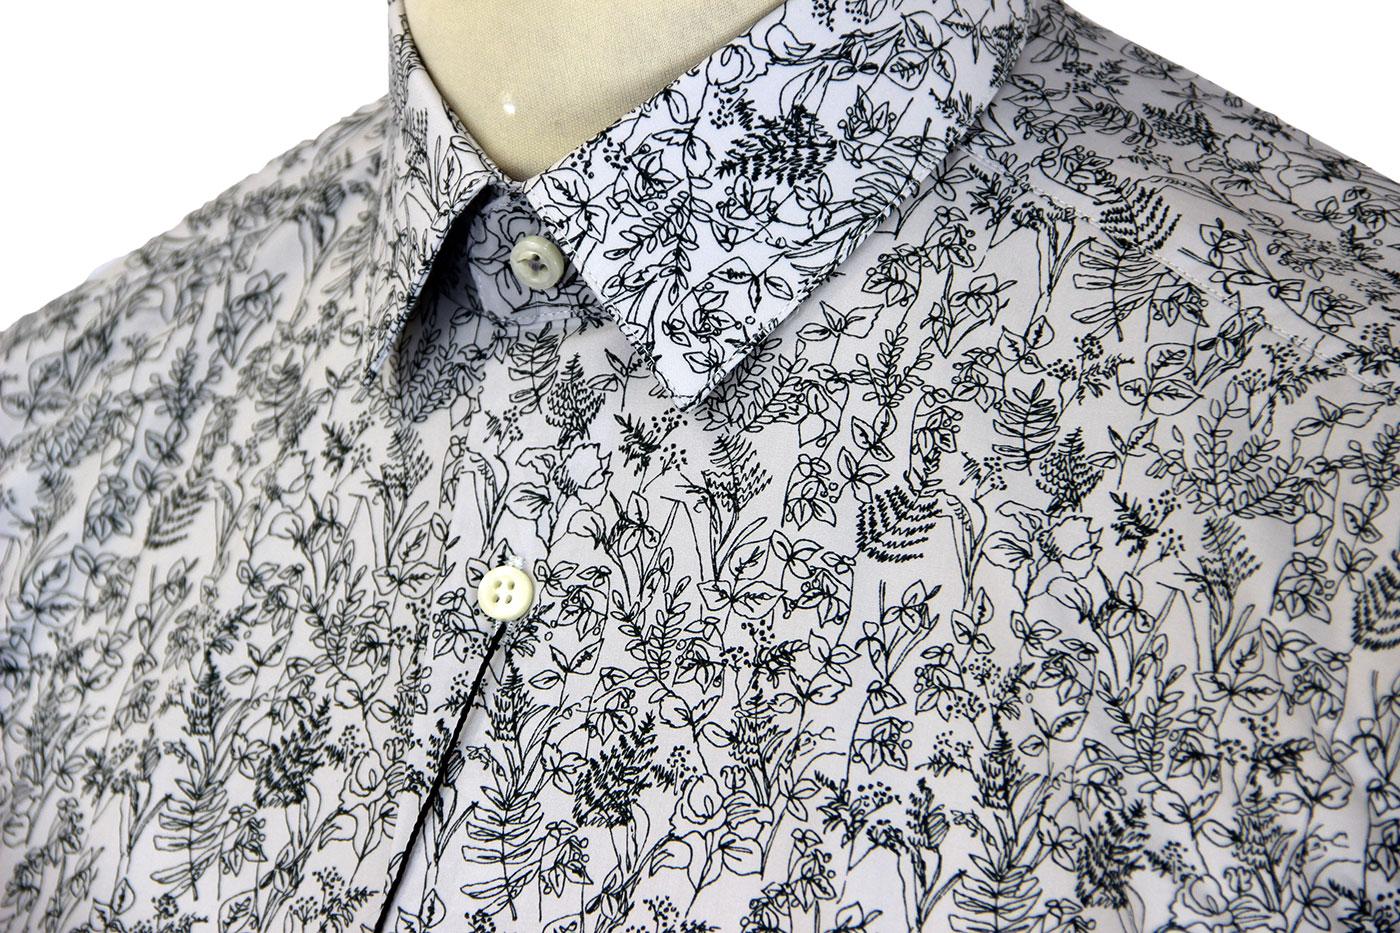 Ben Sherman Tailoring Hand Drawn Floral Retro Mod Shirt Pine